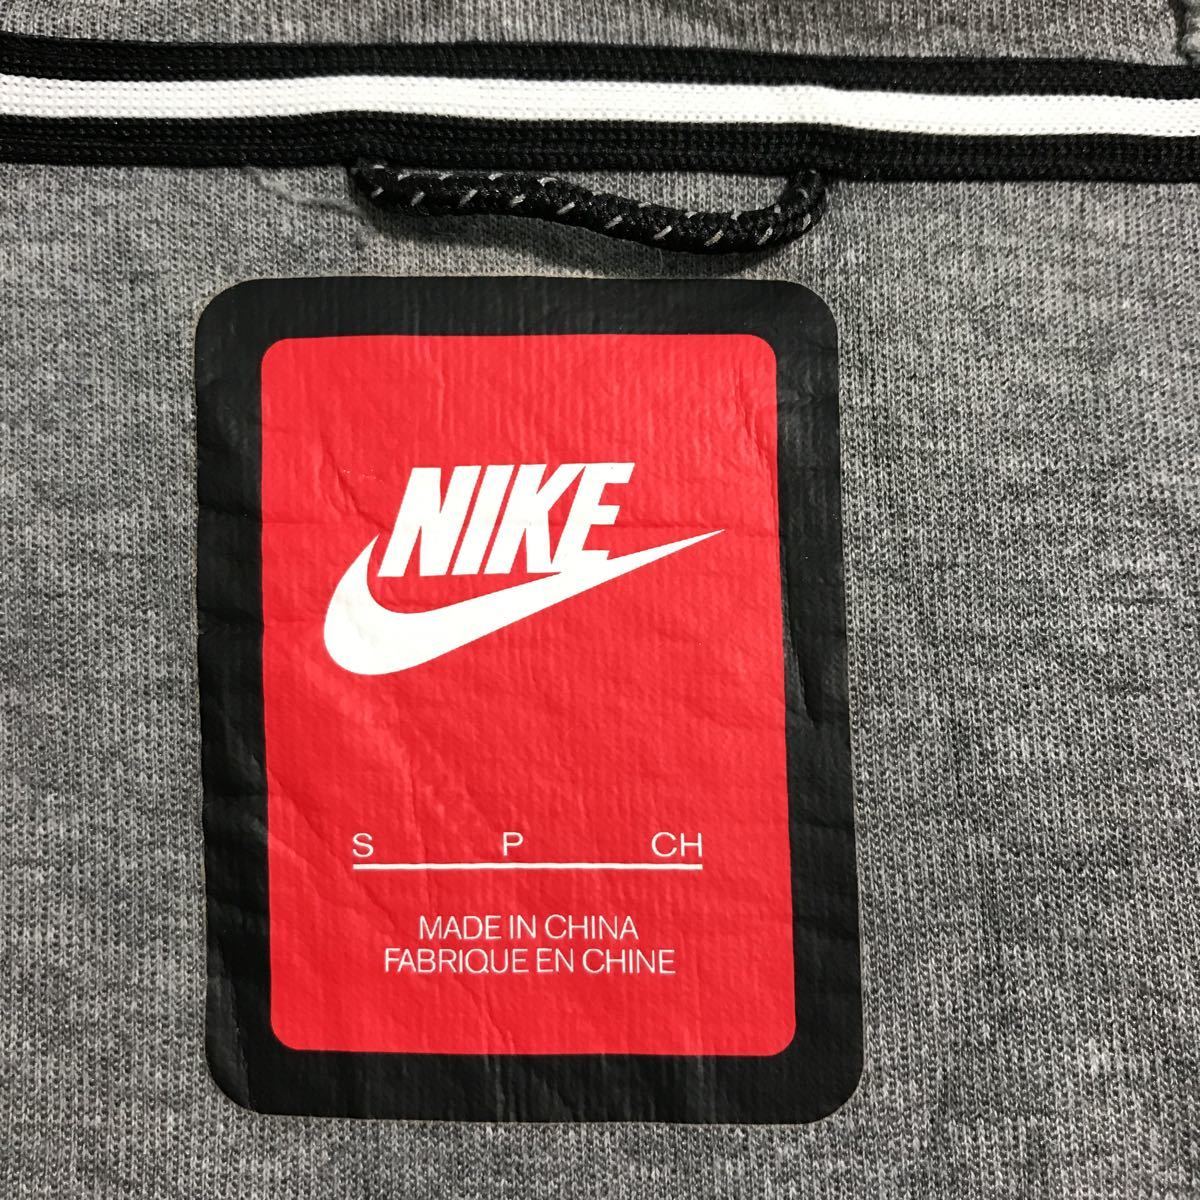 NIKE Logo тренировочный Parker S серый Nike Zip выше спорт б/у одежда . America скупка a508-6815